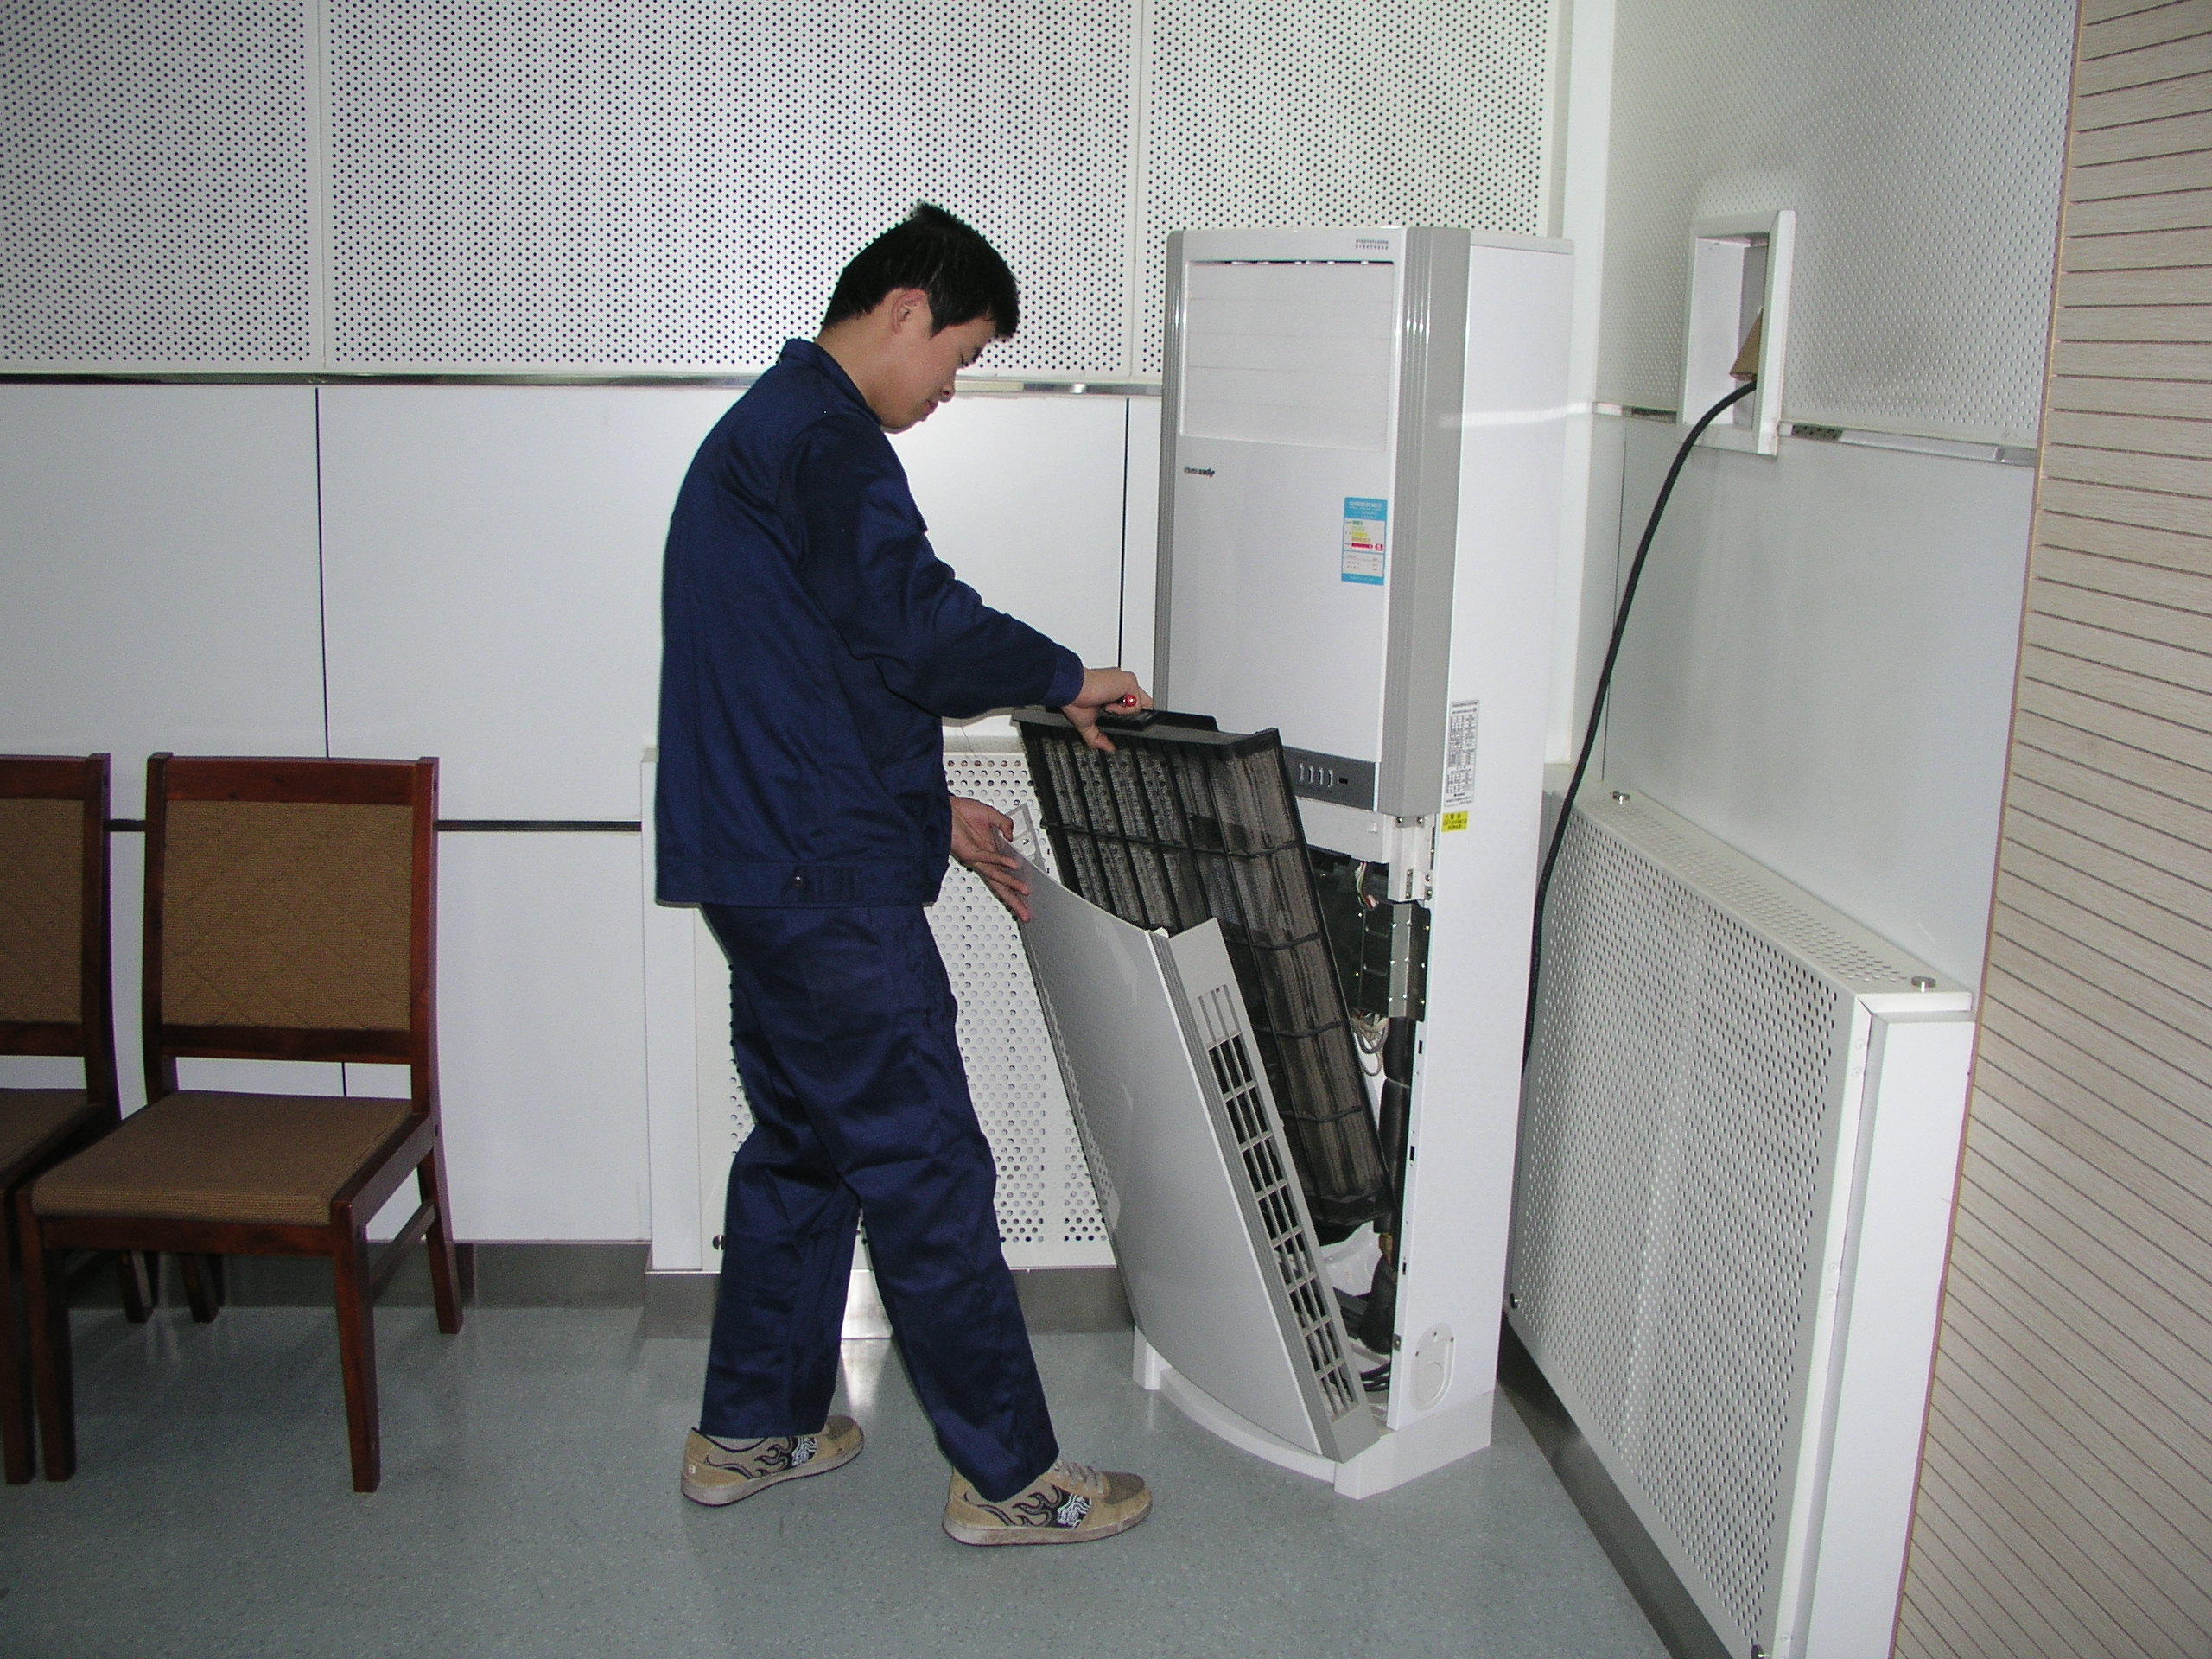 供应用于天津市家电维的天津市南开区扬子空调维修中心咨询热线4006781919